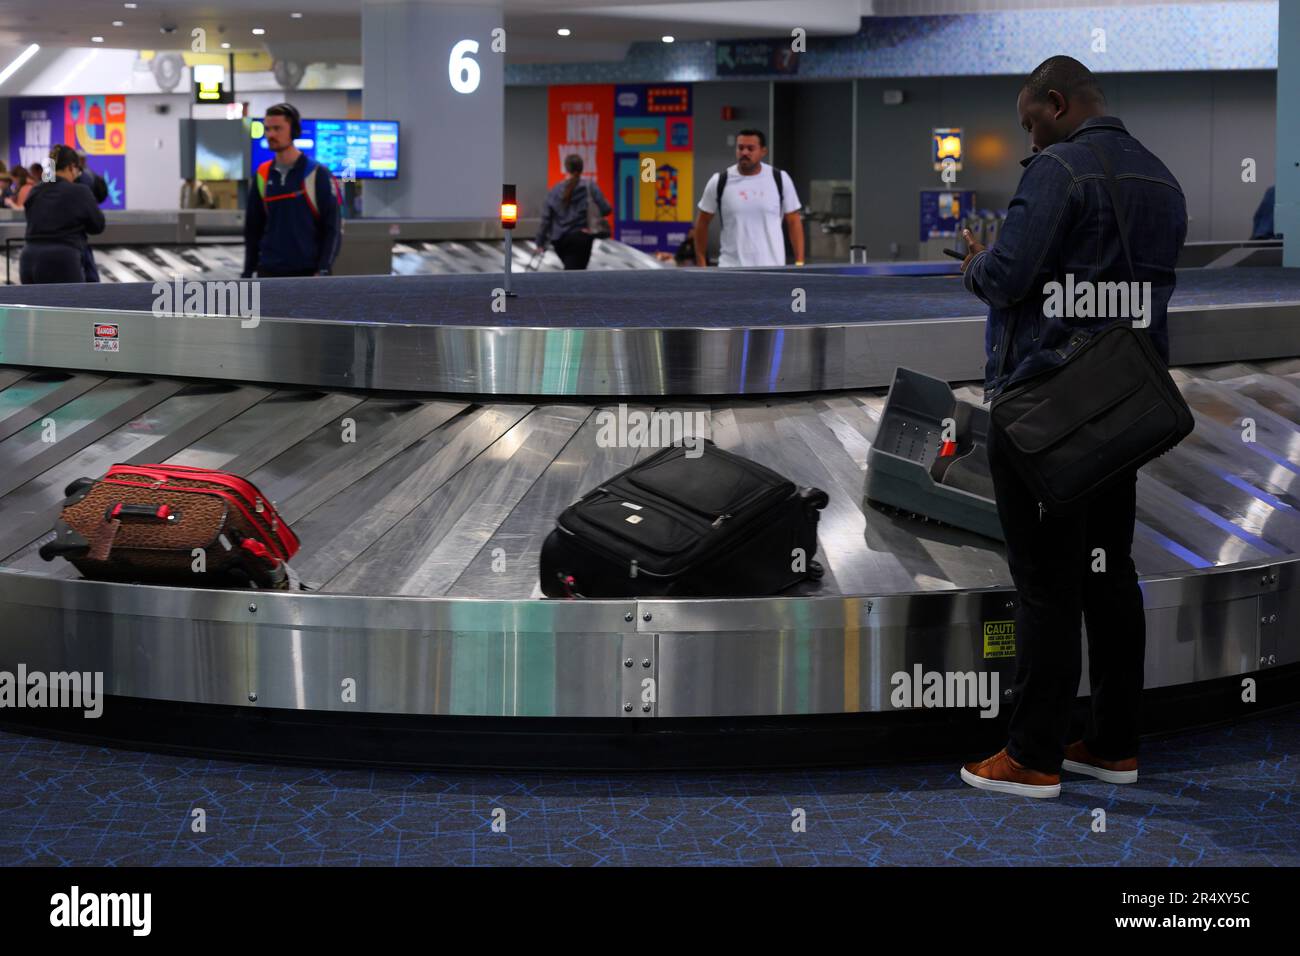 Personas que esperan recoger el equipaje de un carrusel de equipaje en la zona de recogida de equipajes de la Terminal B del aeropuerto de LaGuardia, en la ciudad de Nueva York. Foto de stock